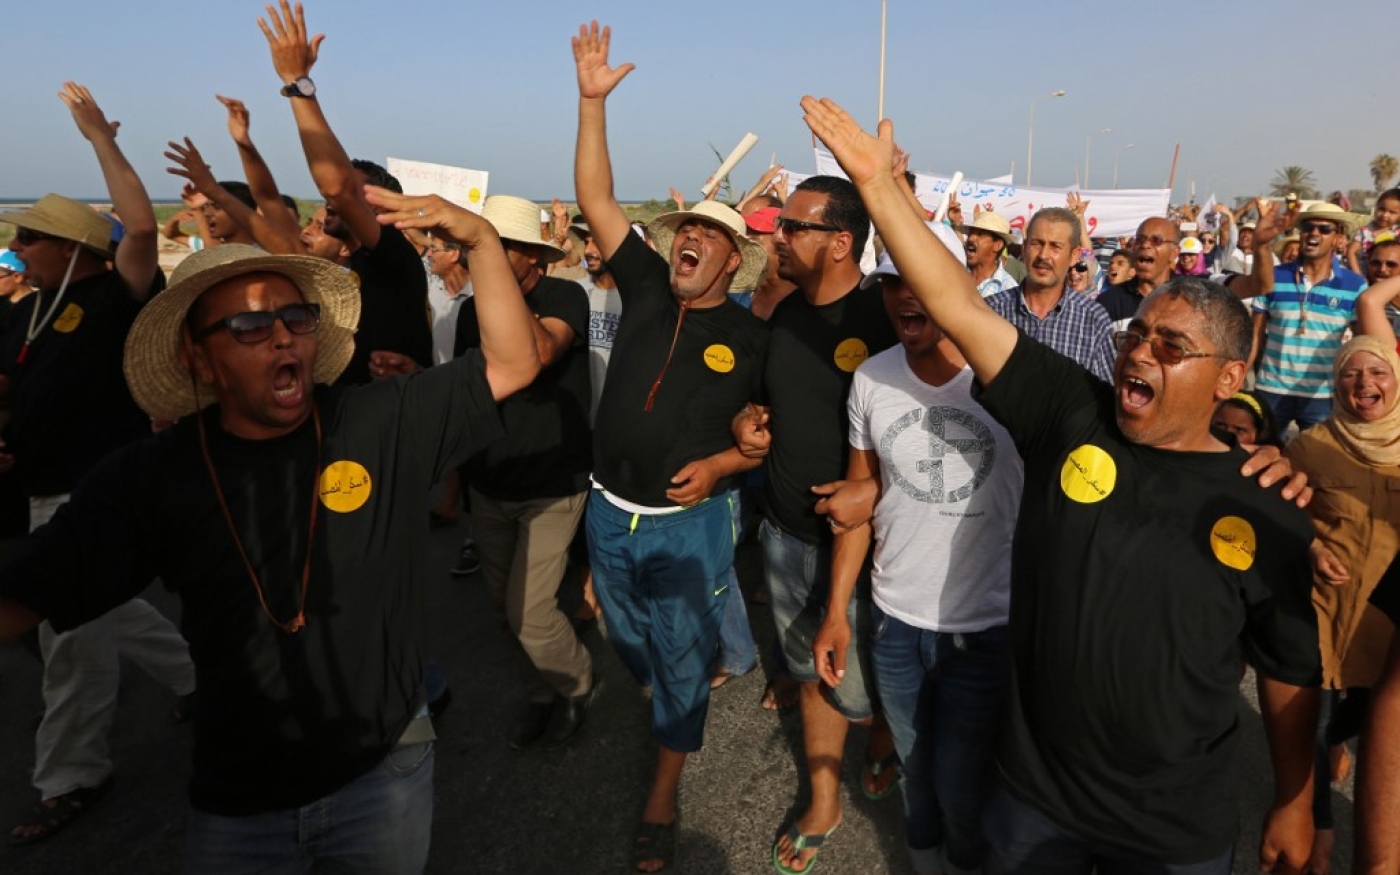 Les habitants clament des slogans antipollution et antigouvernementaux lors d’une manifestation contre la pollution causée par les usines dans la région tunisienne de Gabès, le 30 juin 2017 (AFP)